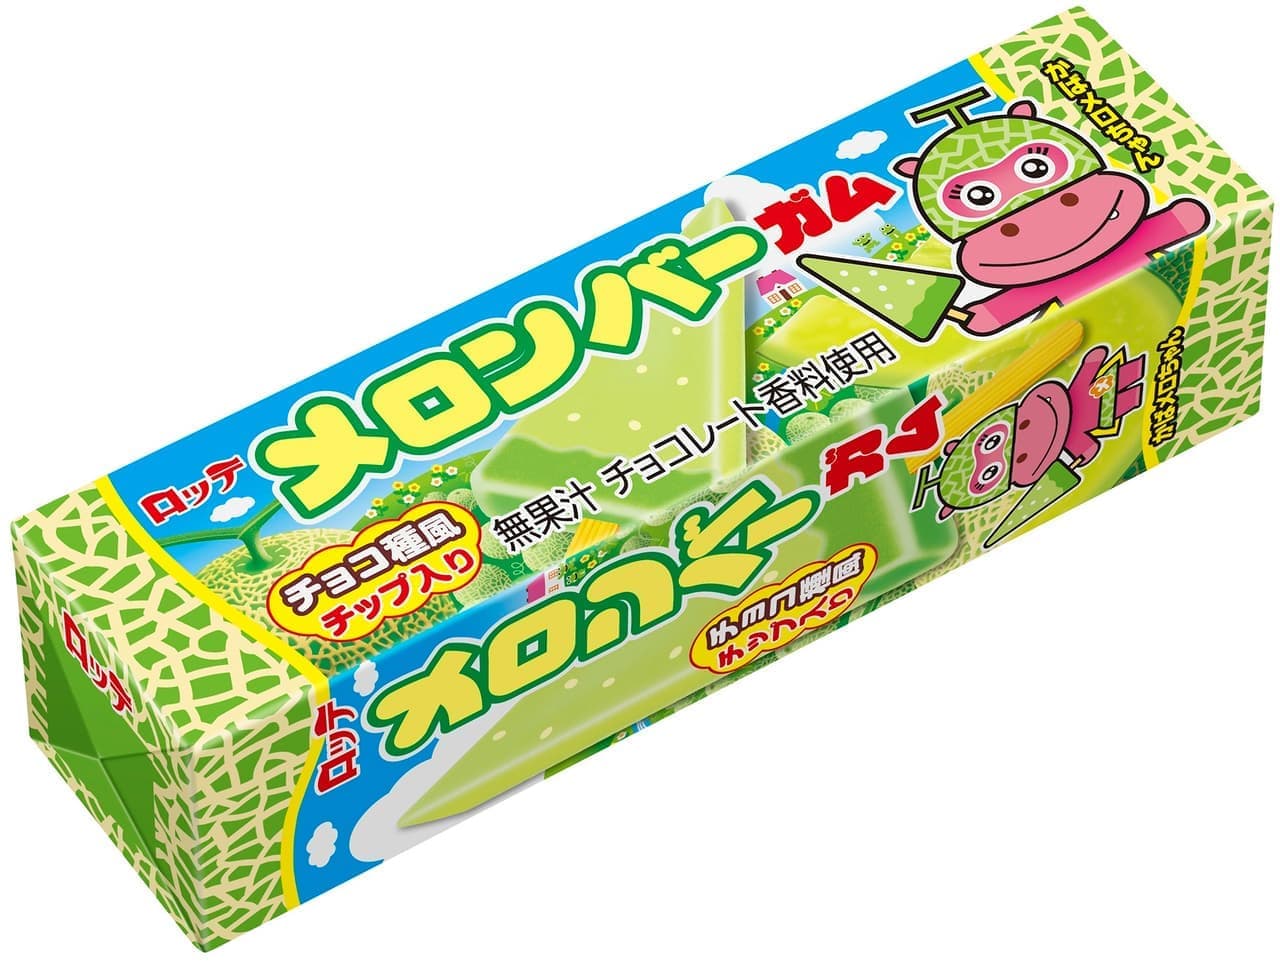 Lotte "Melon Bar Gum